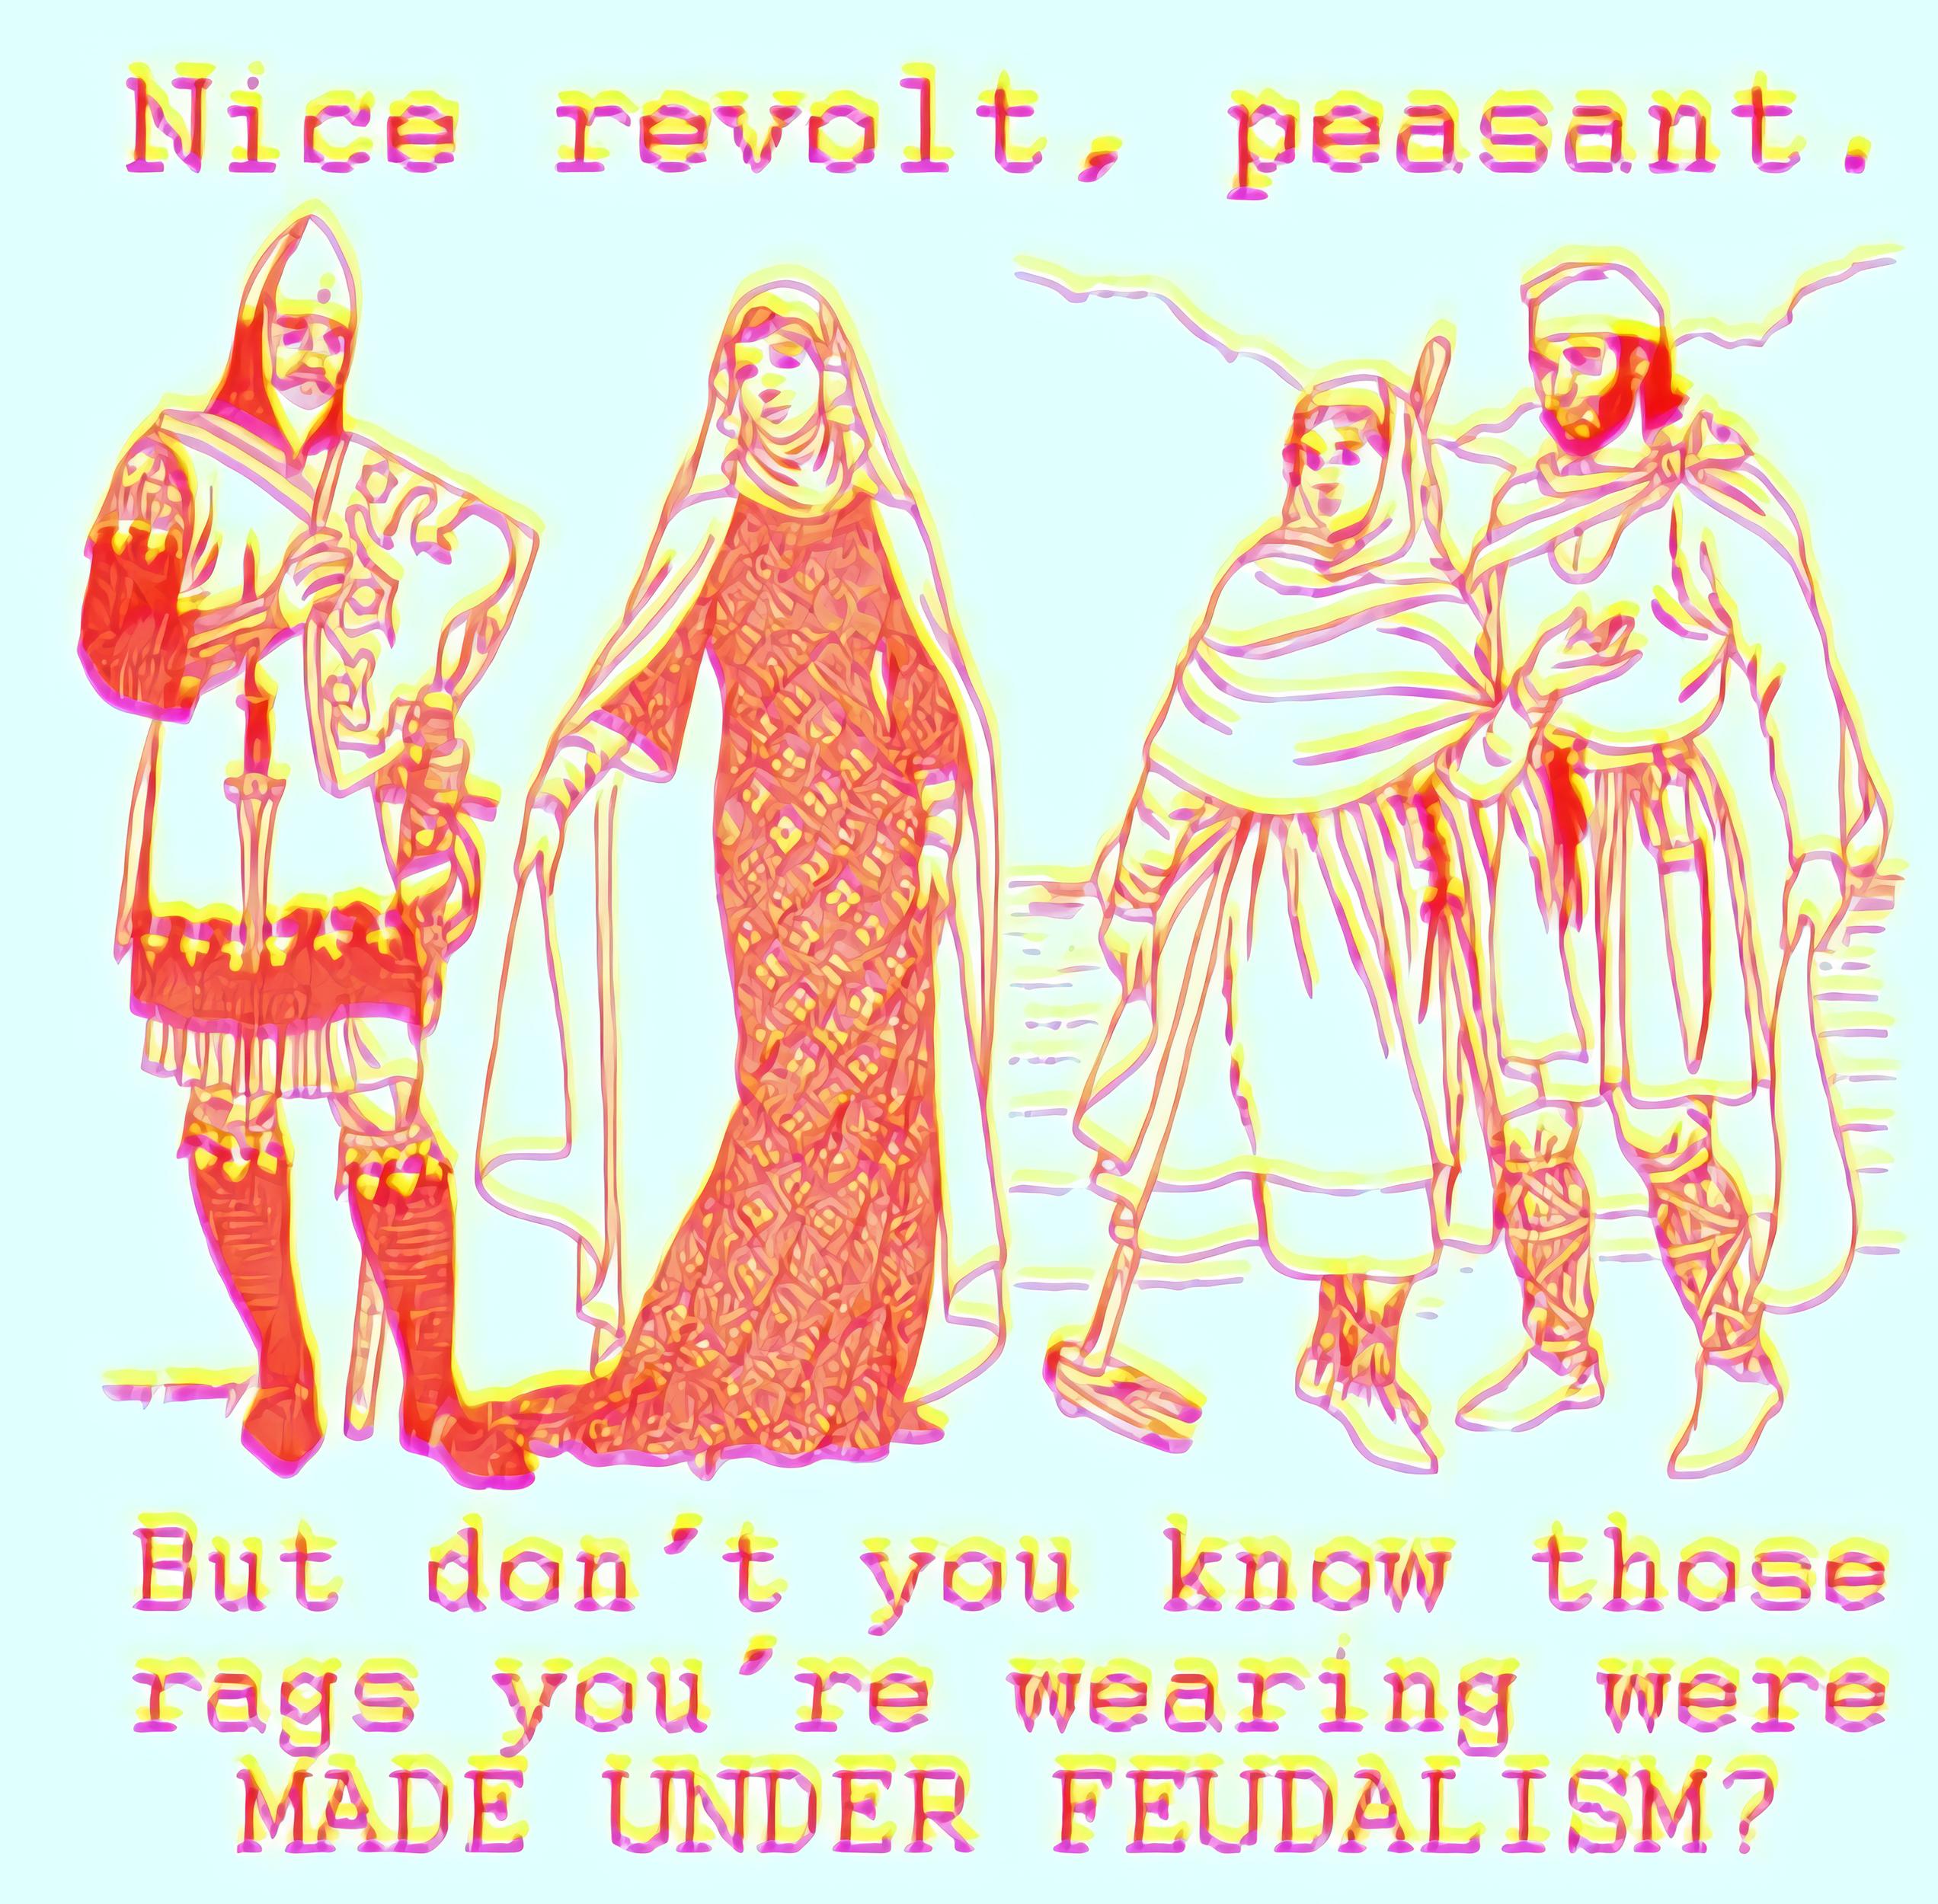 Nive revolt, peasant